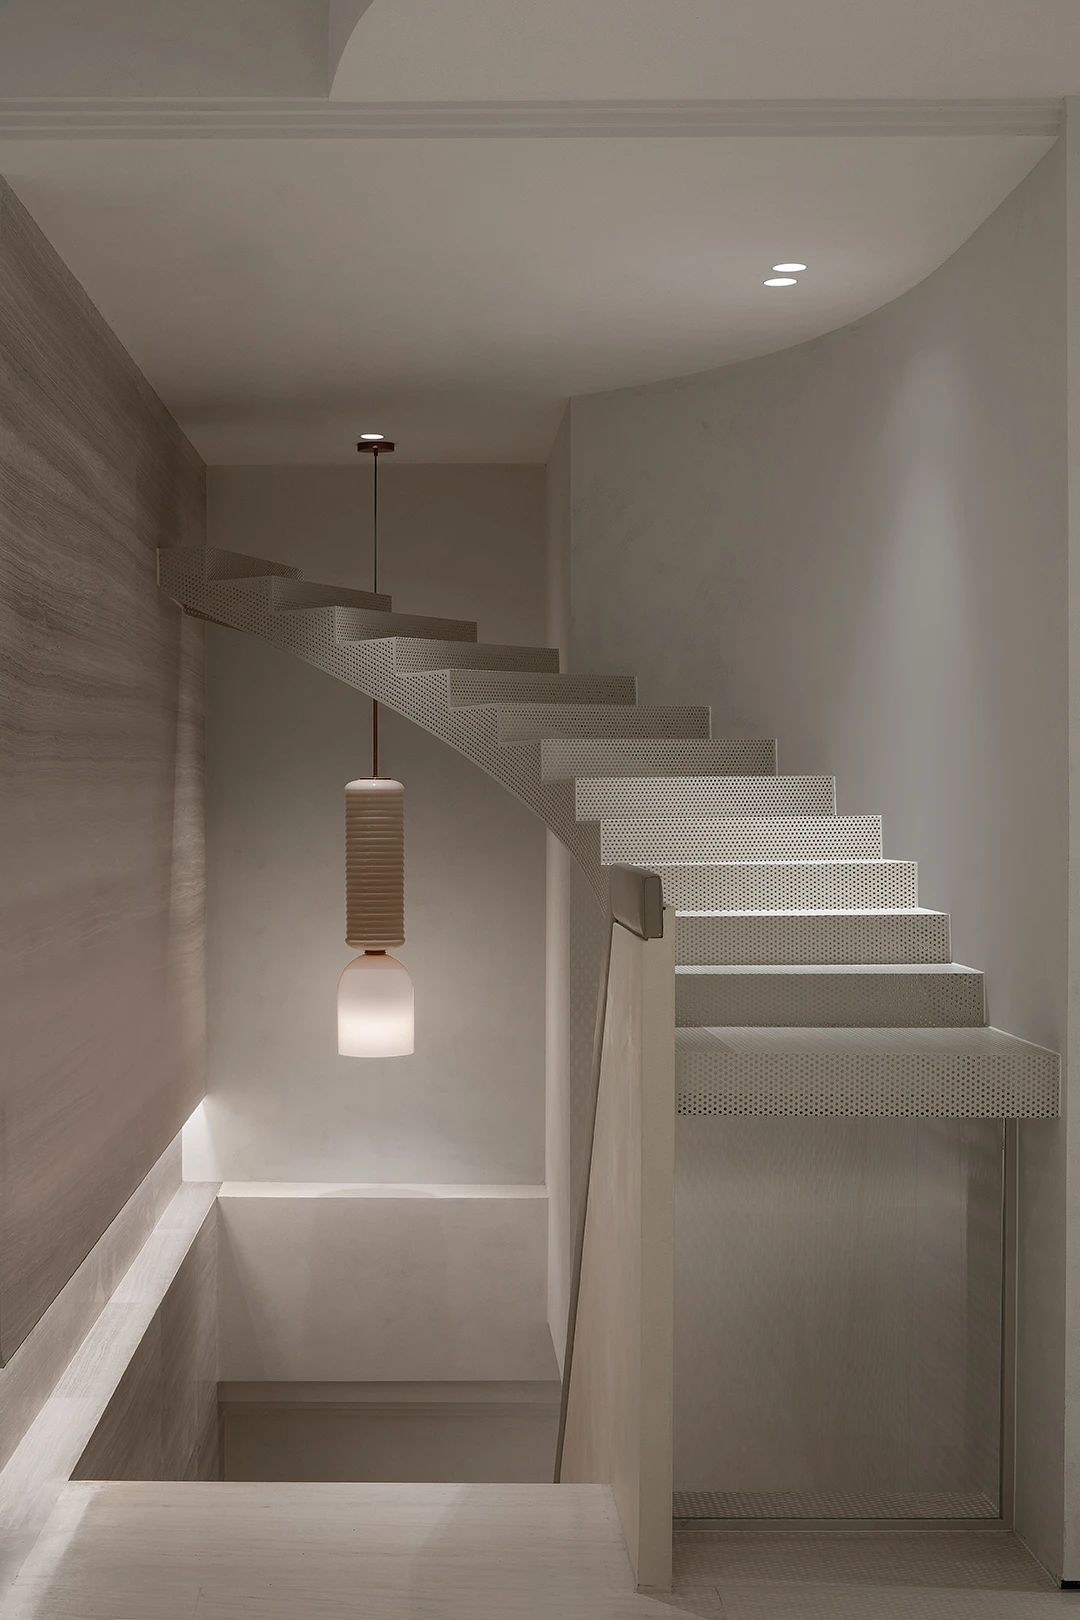 灯光案例,现代简约风格,上海ANEST COLLECTIVE服饰店室内设计照明案例-阶面律动层次